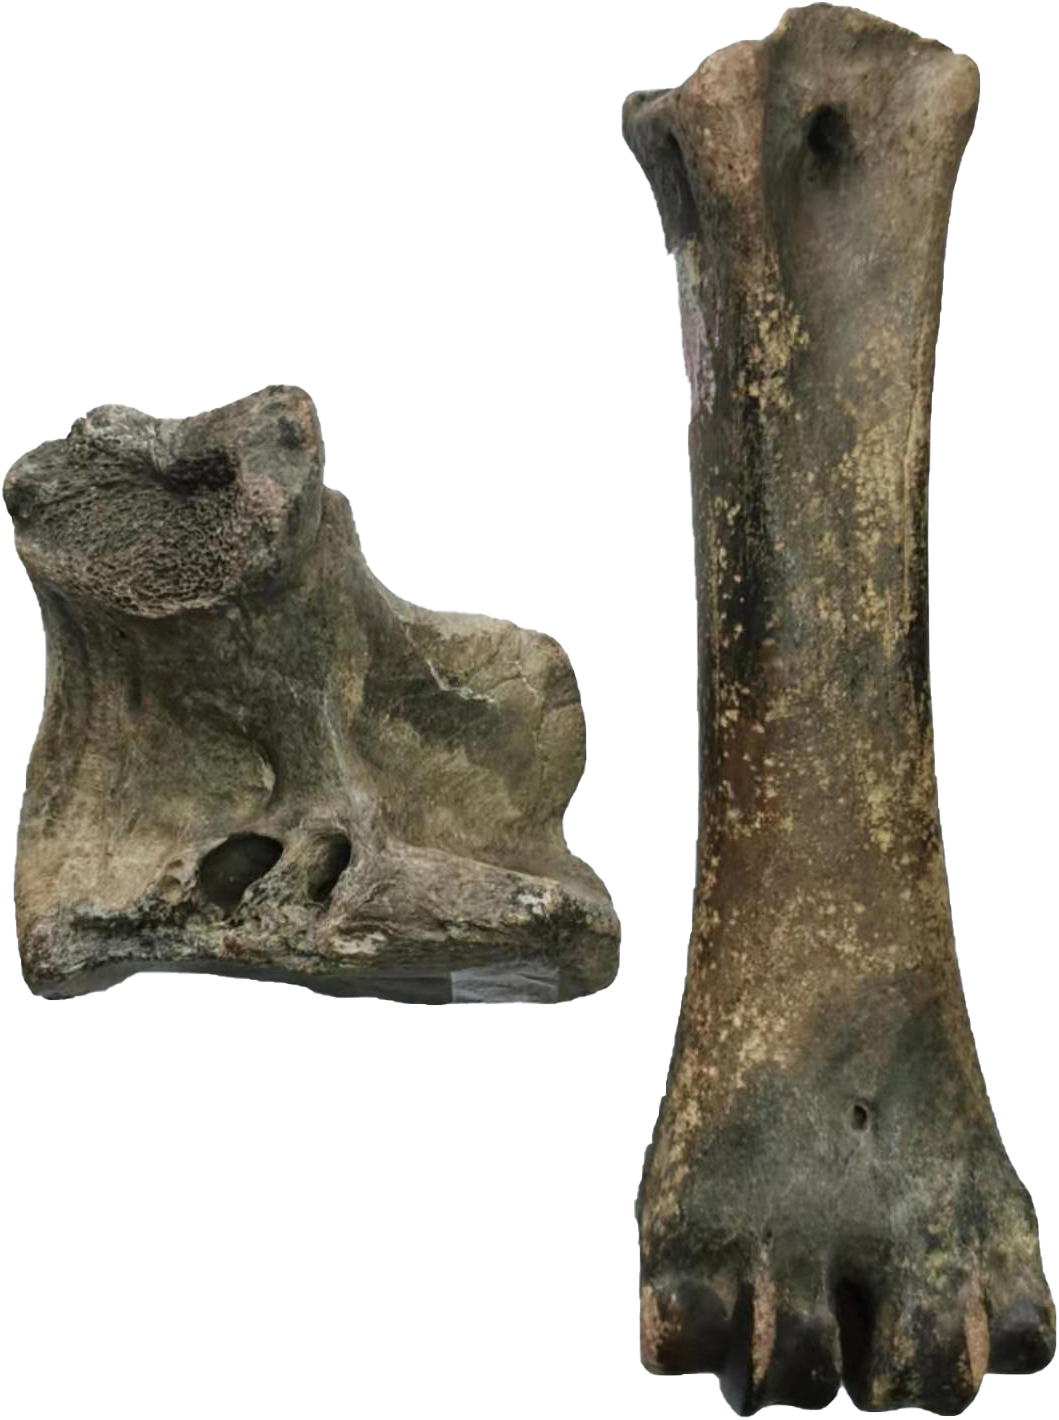 虎骨化石图片